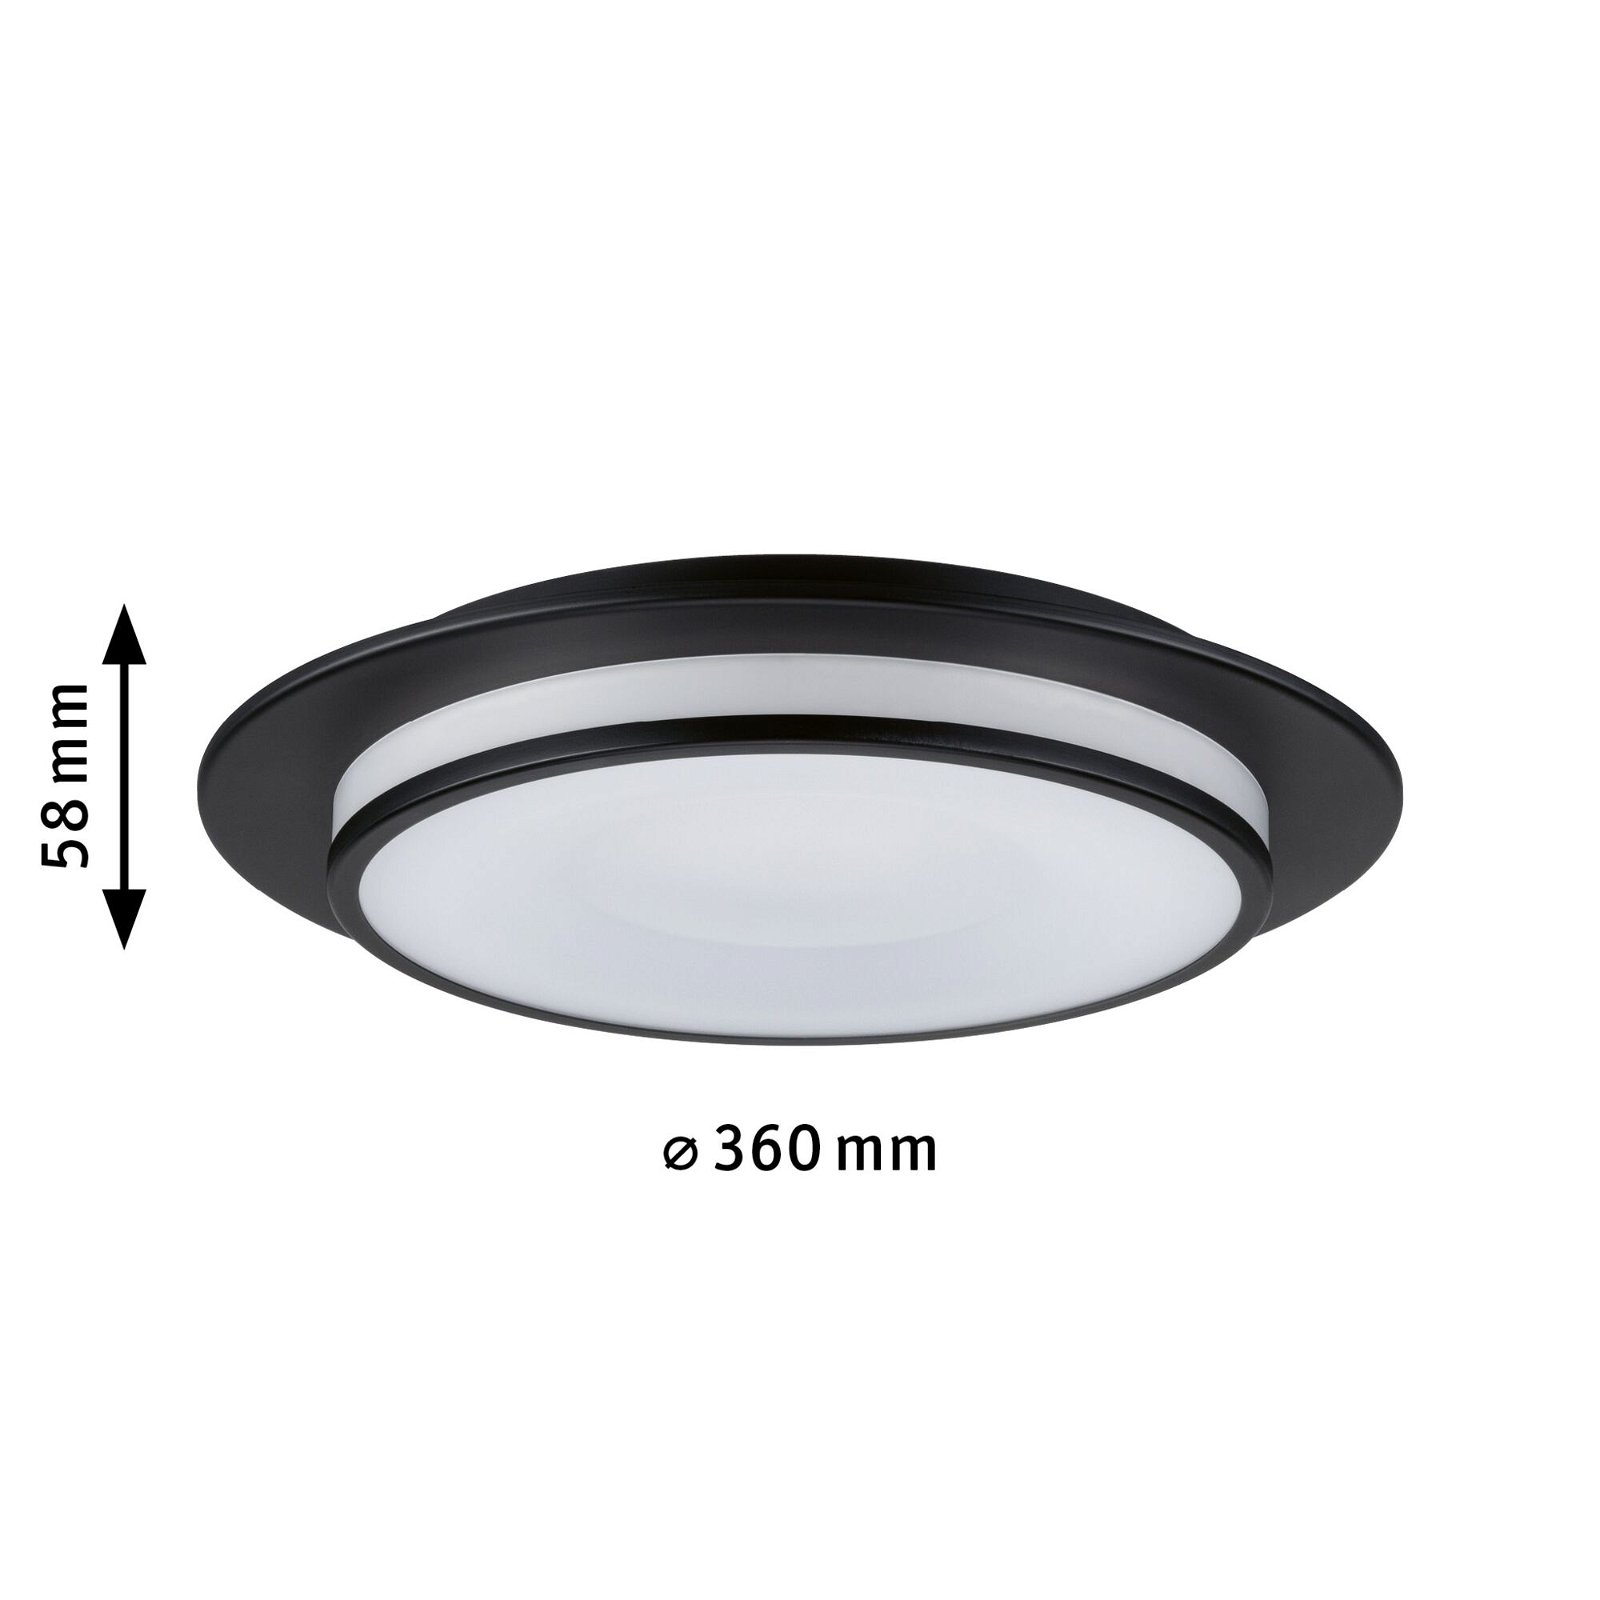 LED Ceiling luminaire 3-Step-Dim Egron 2700K 750lm 230V 16W dimmable Black matt